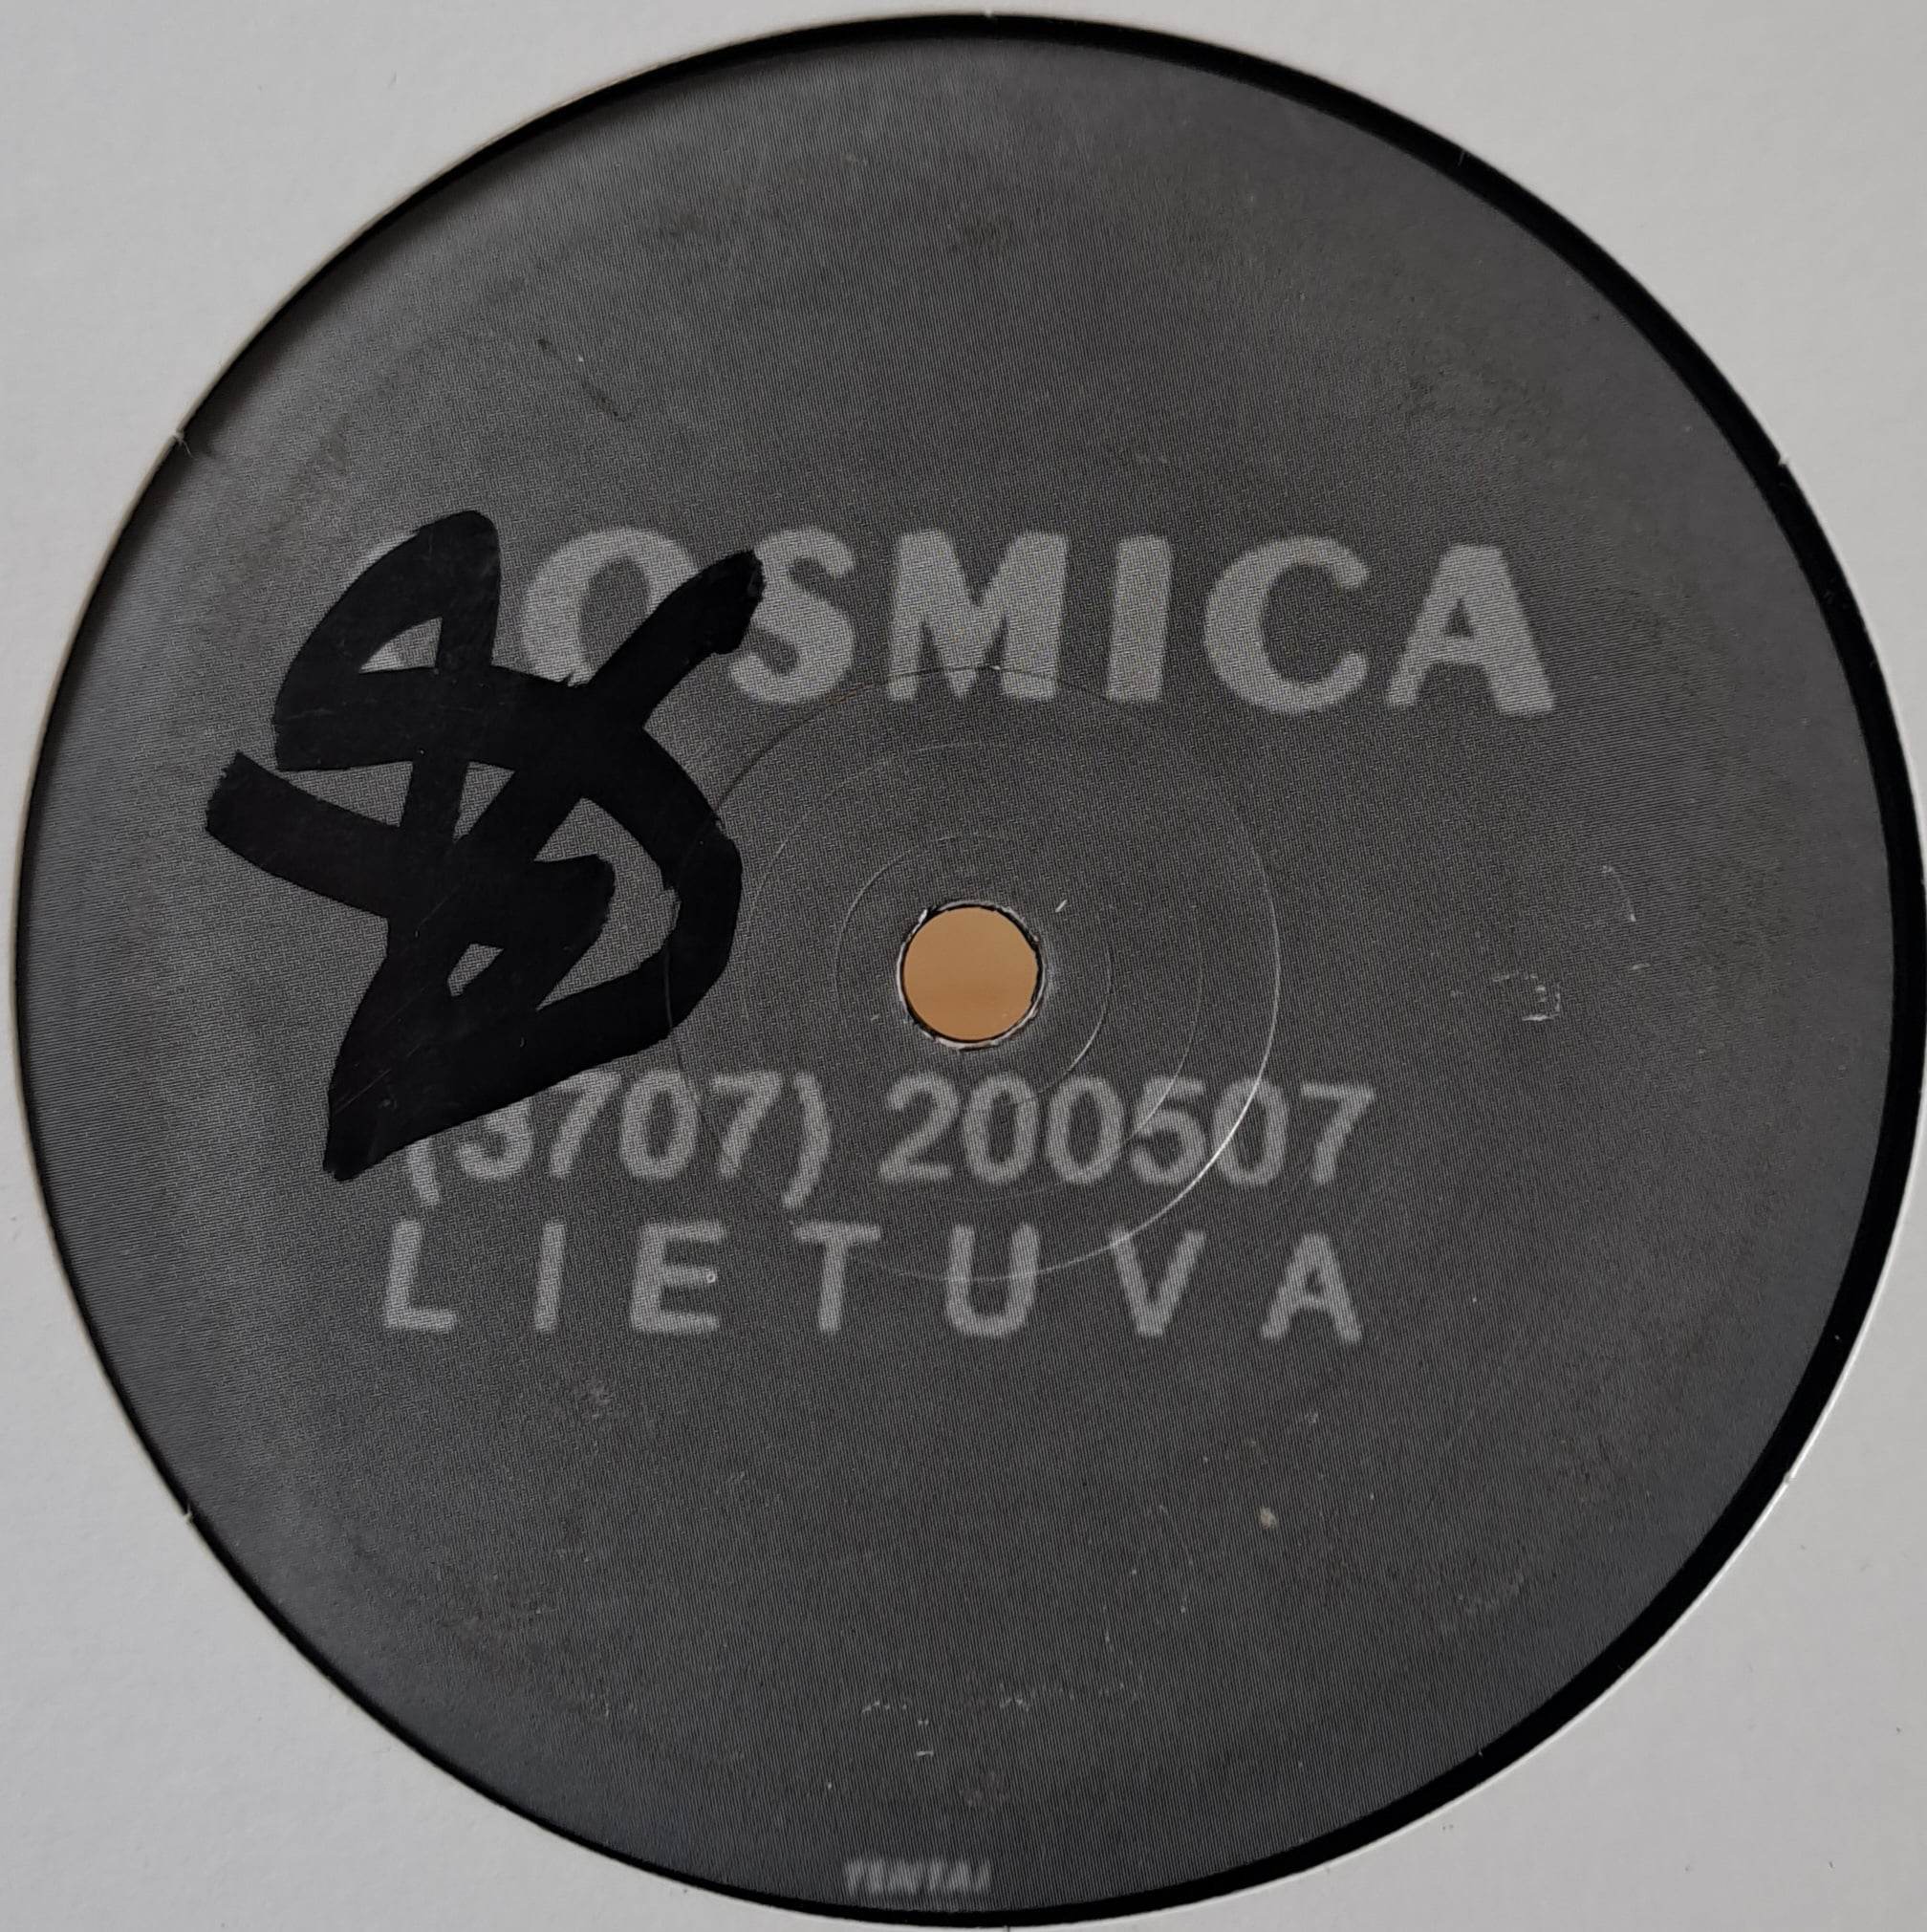 Cosmica 001 - vinyle Expérimentale